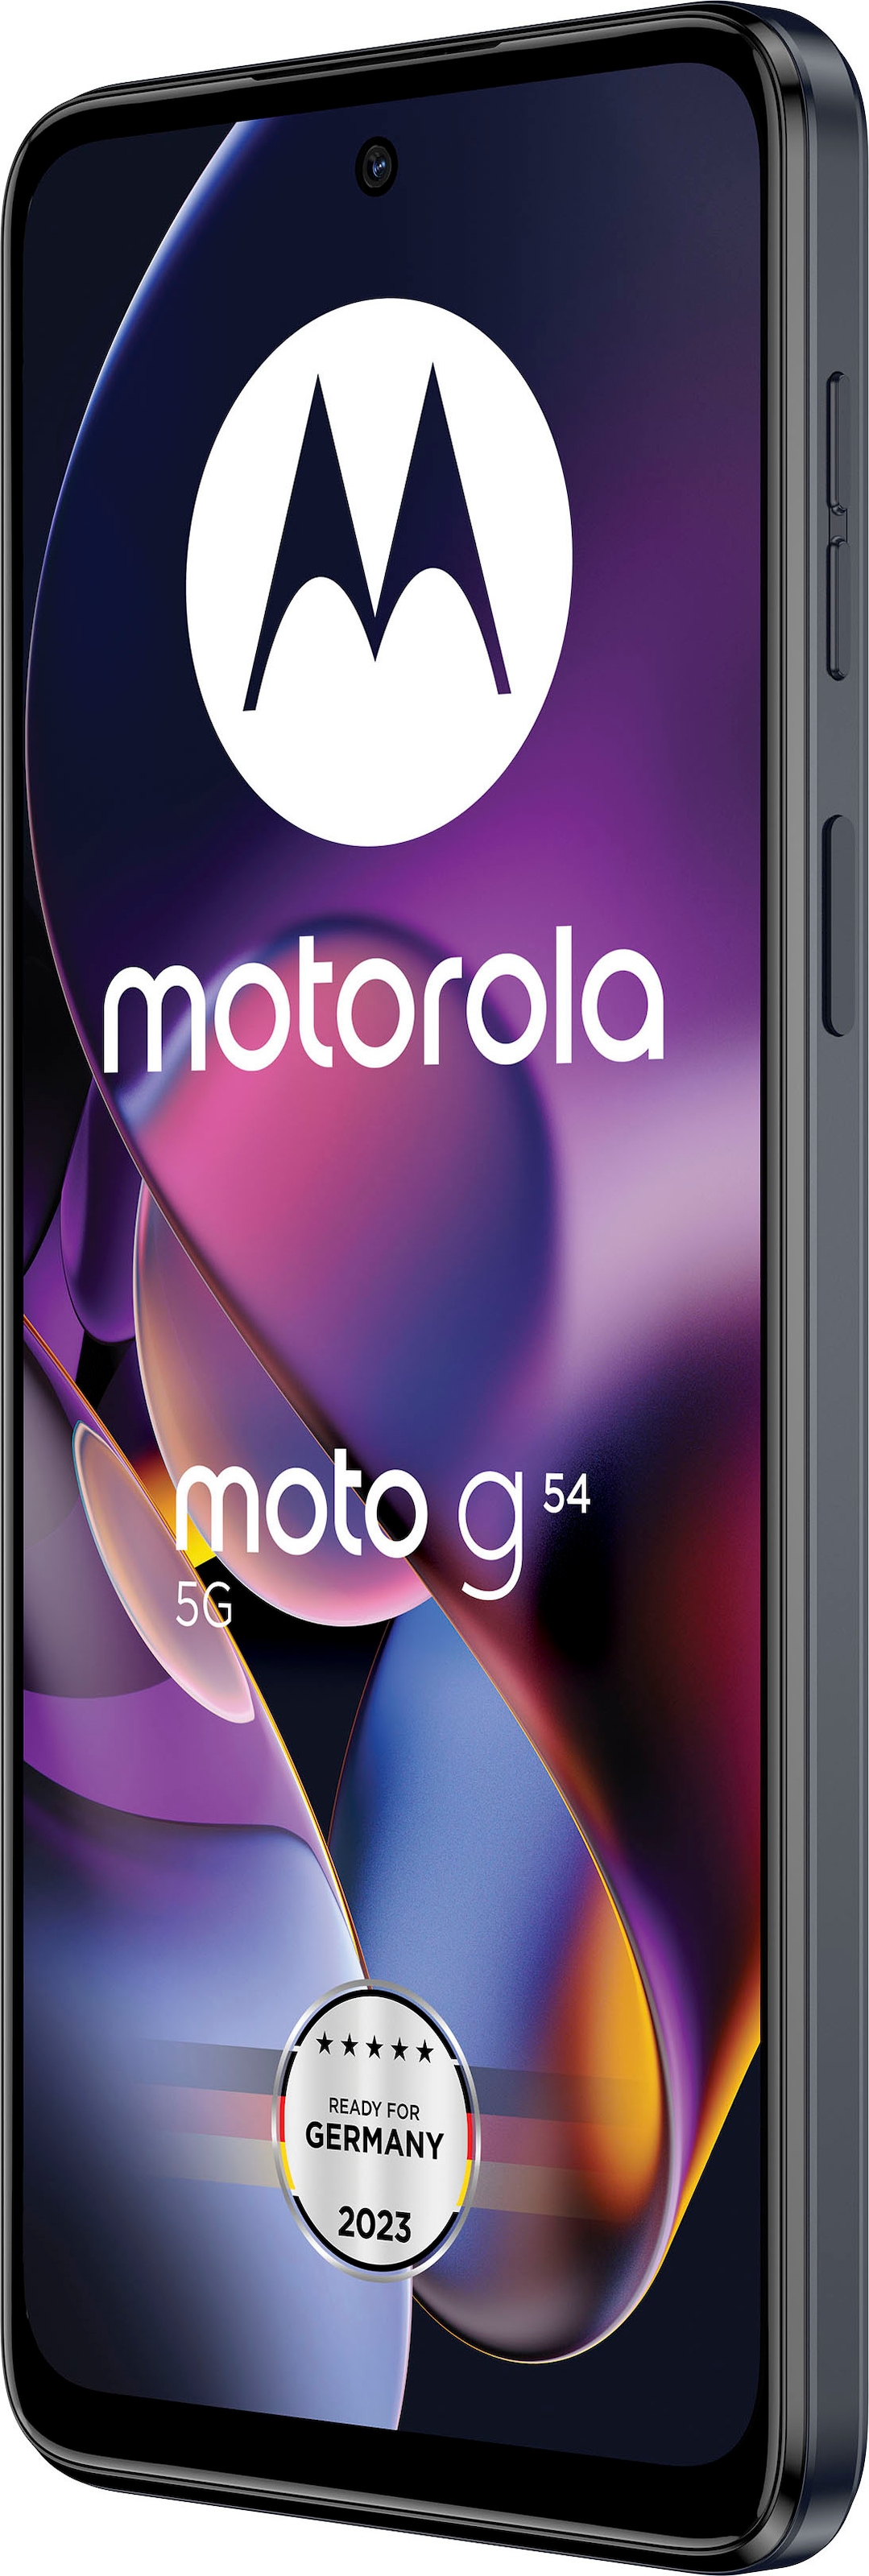 GB grün, Smartphone mint Kamera cm/6,5 16,51 Speicherplatz, »MOTOROLA Raten moto auf 50 bestellen Zoll, g54«, MP 256 Motorola